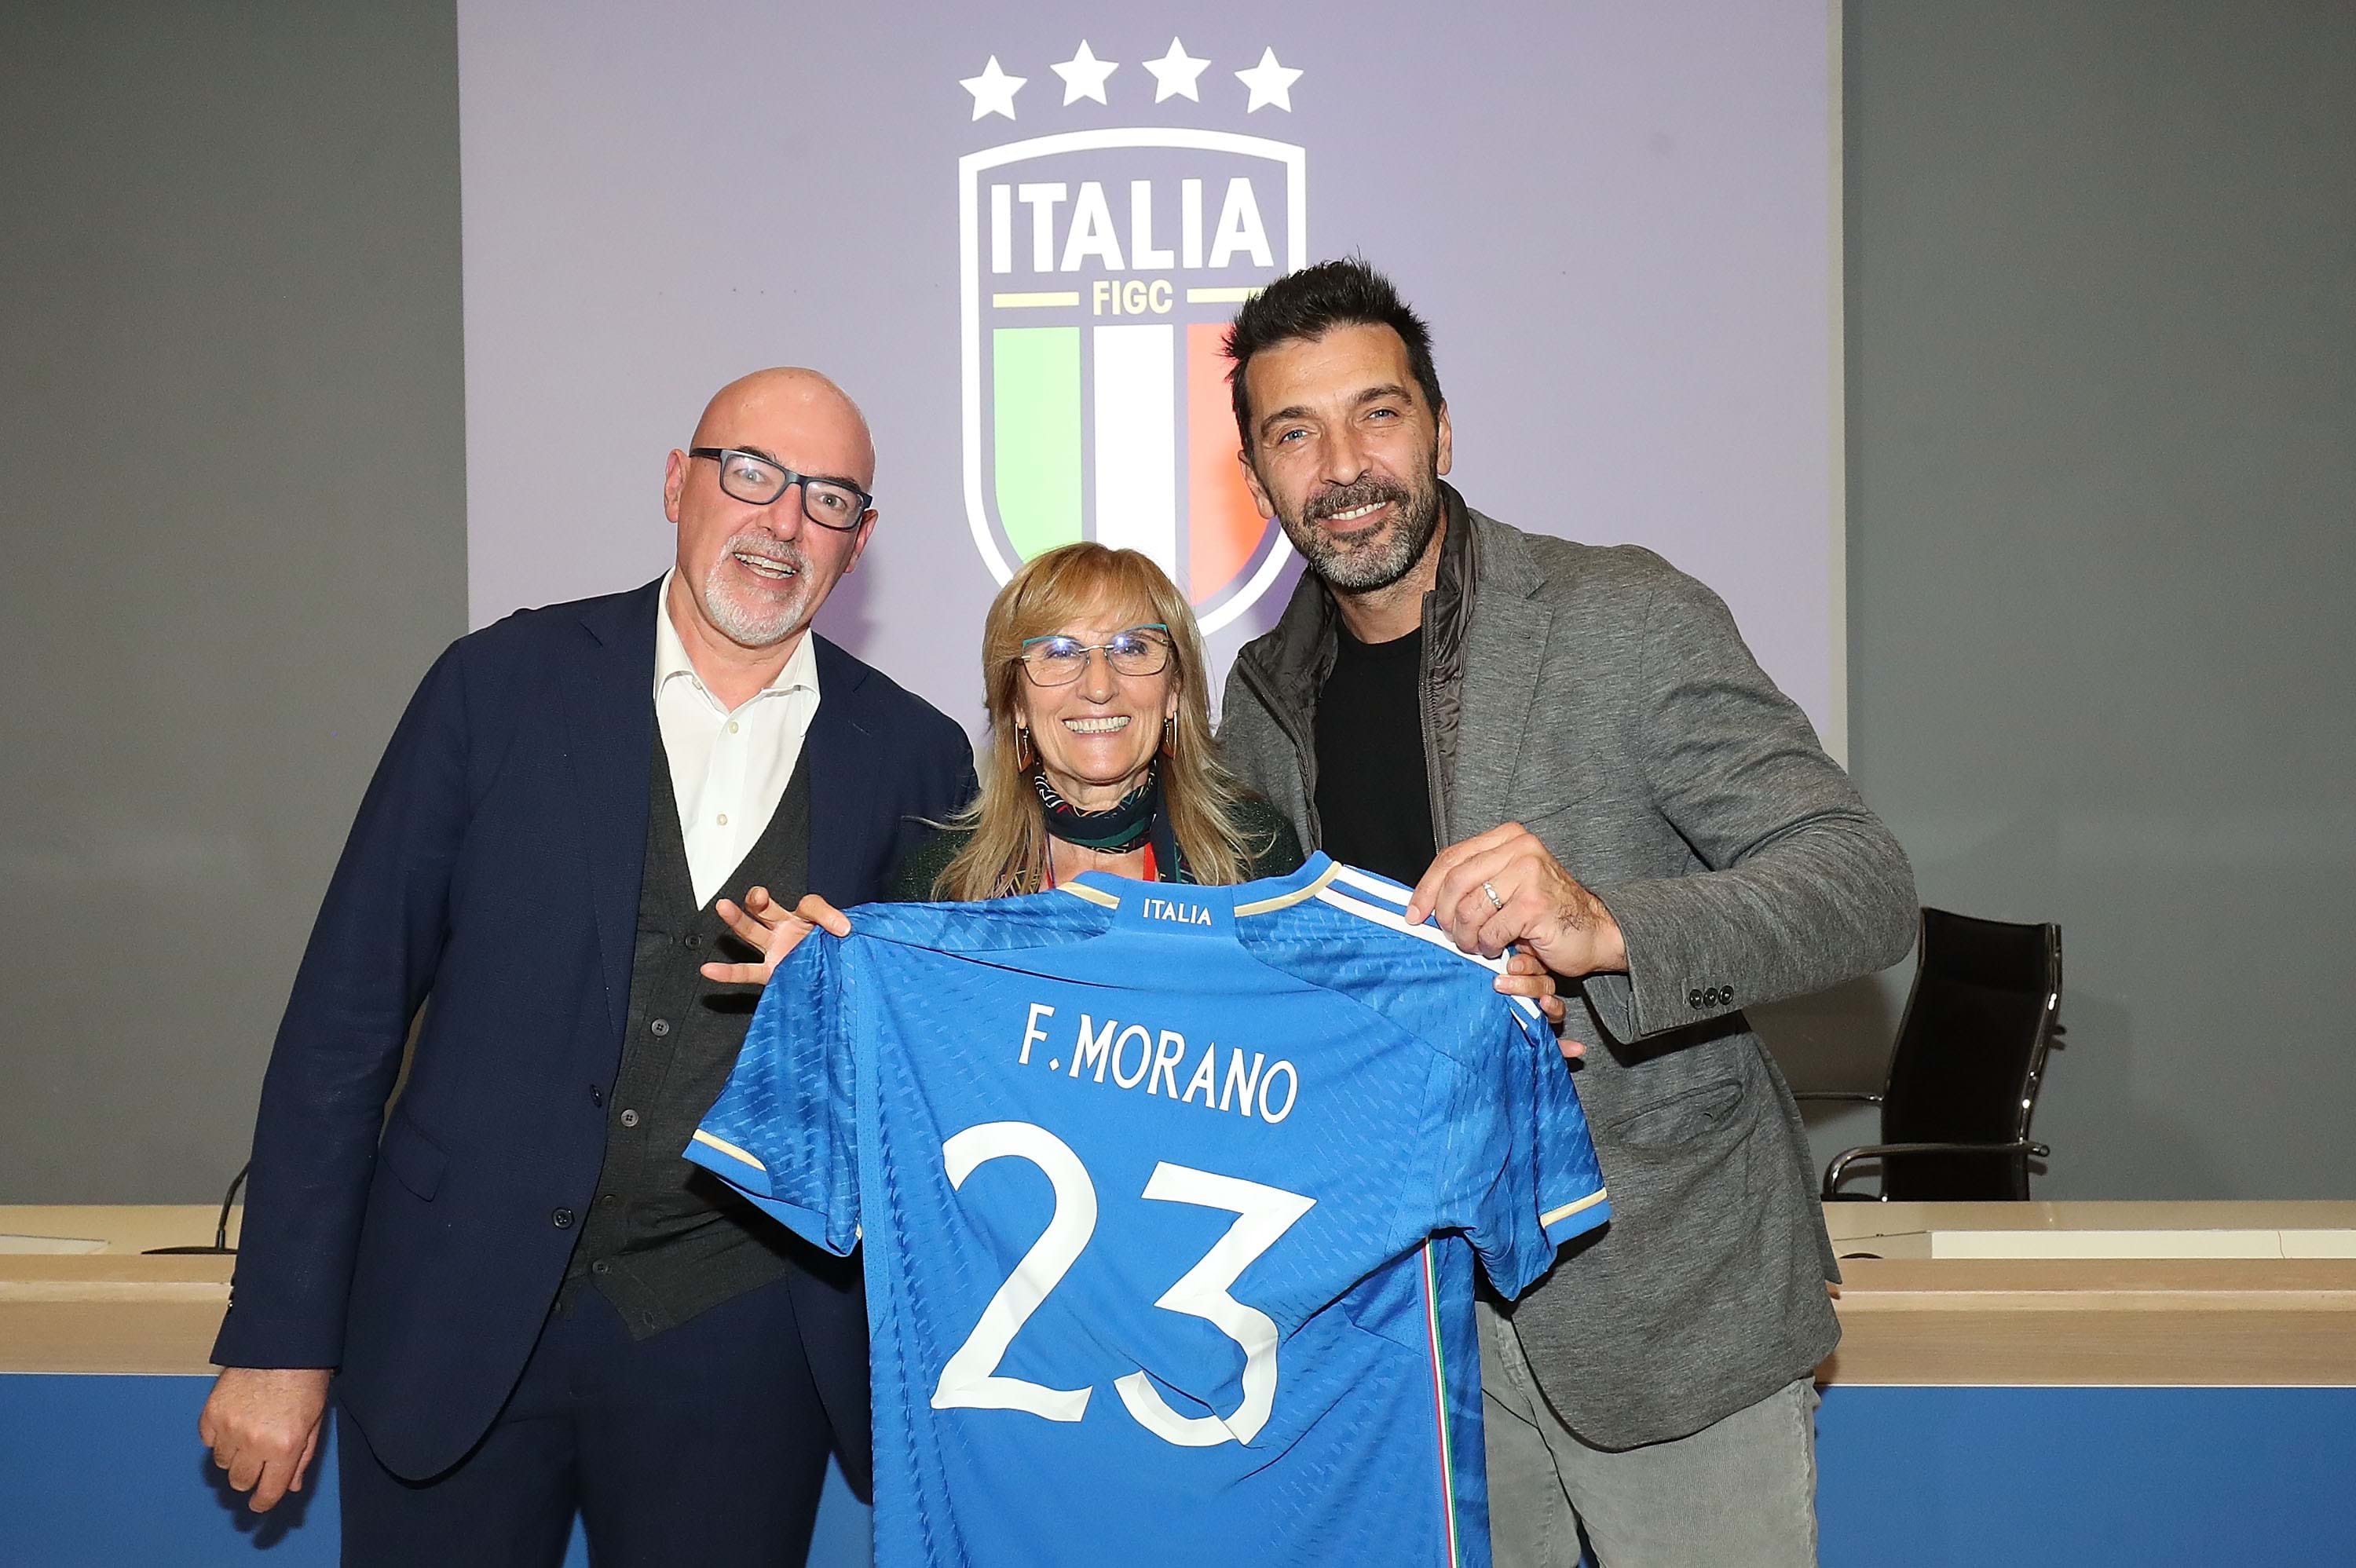 Accordo FIGC - Istituto Alberghiero F. Morano di Caivano